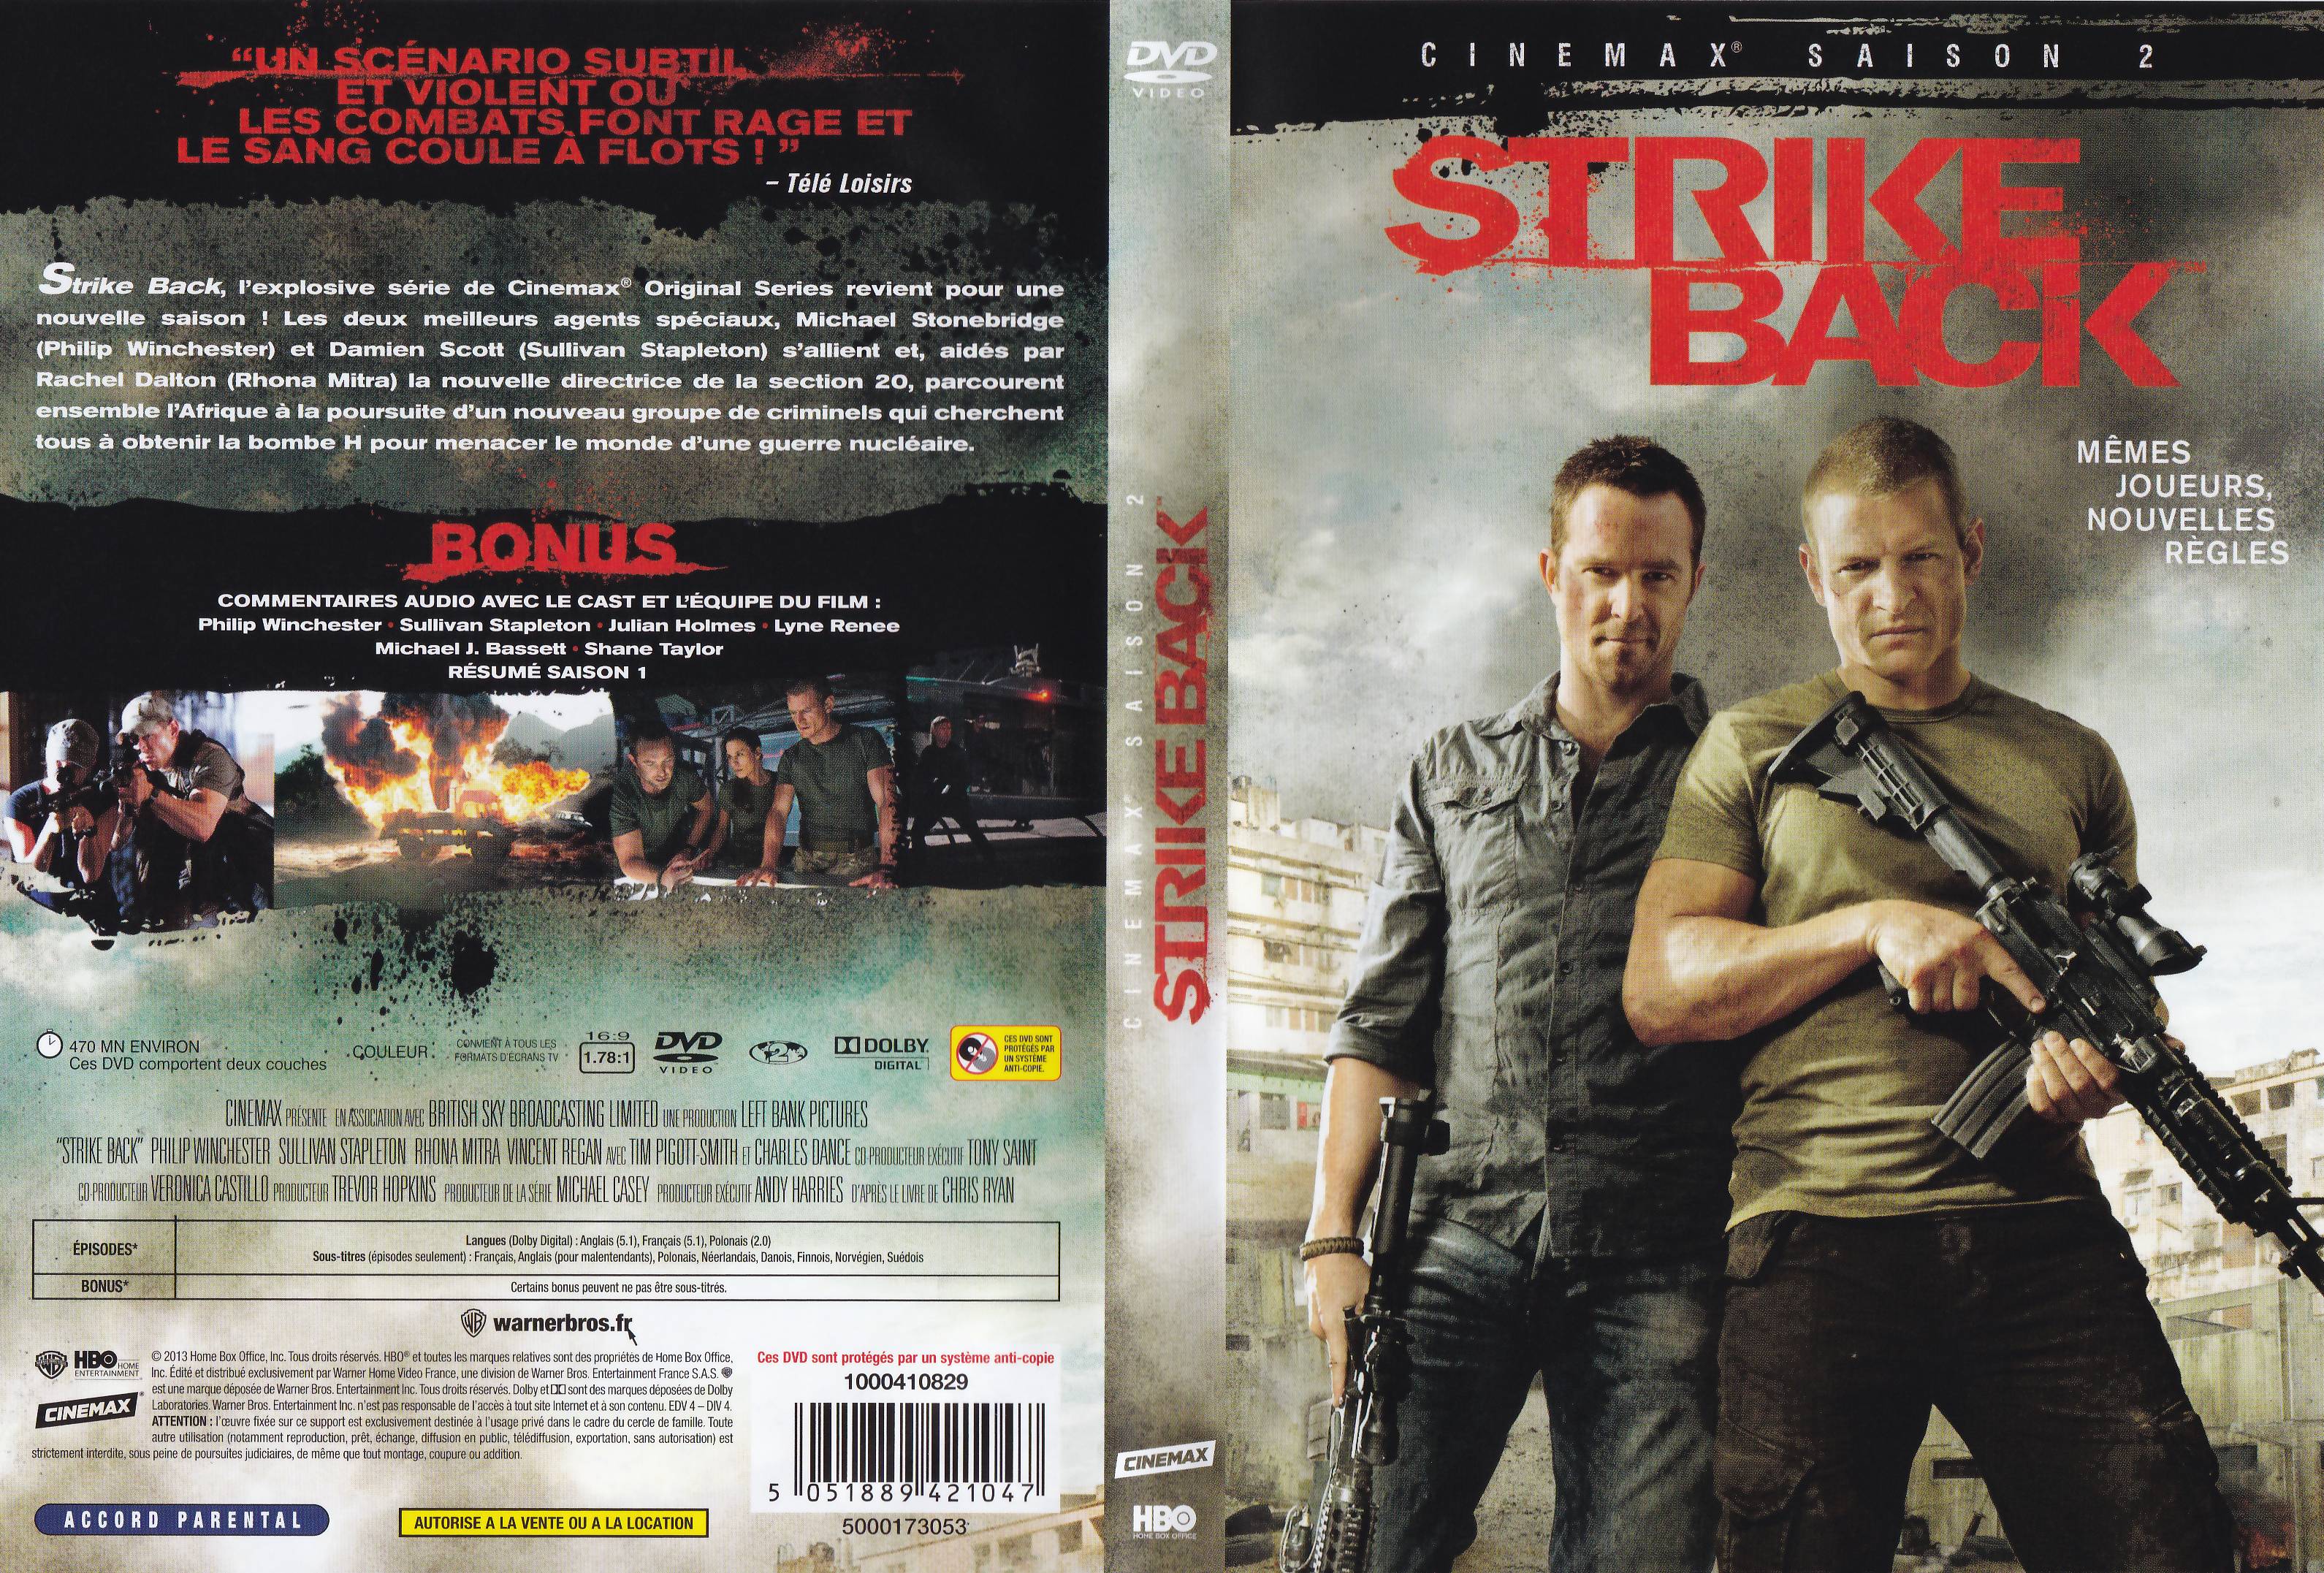 Jaquette DVD Strike Back saison 2 